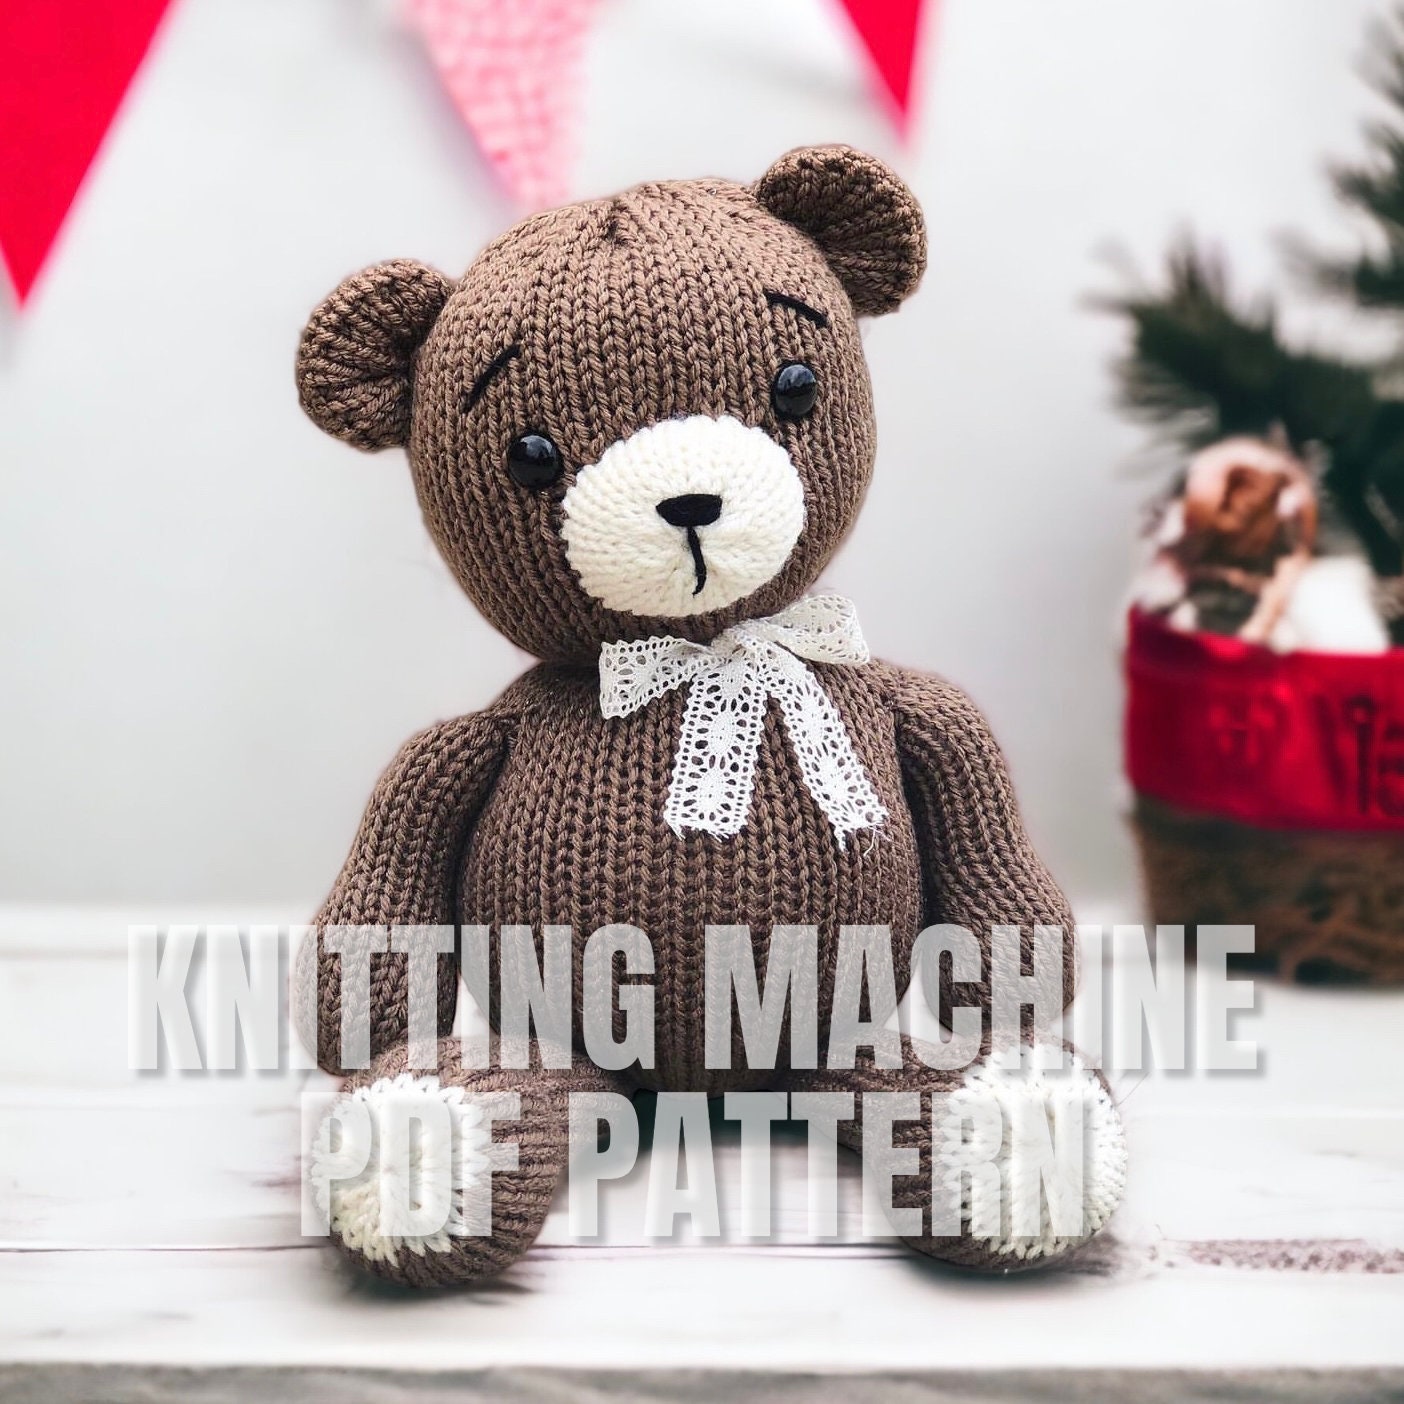 Knit and Crochet Teddy Bear Pattern, Knitting Machine Patterns